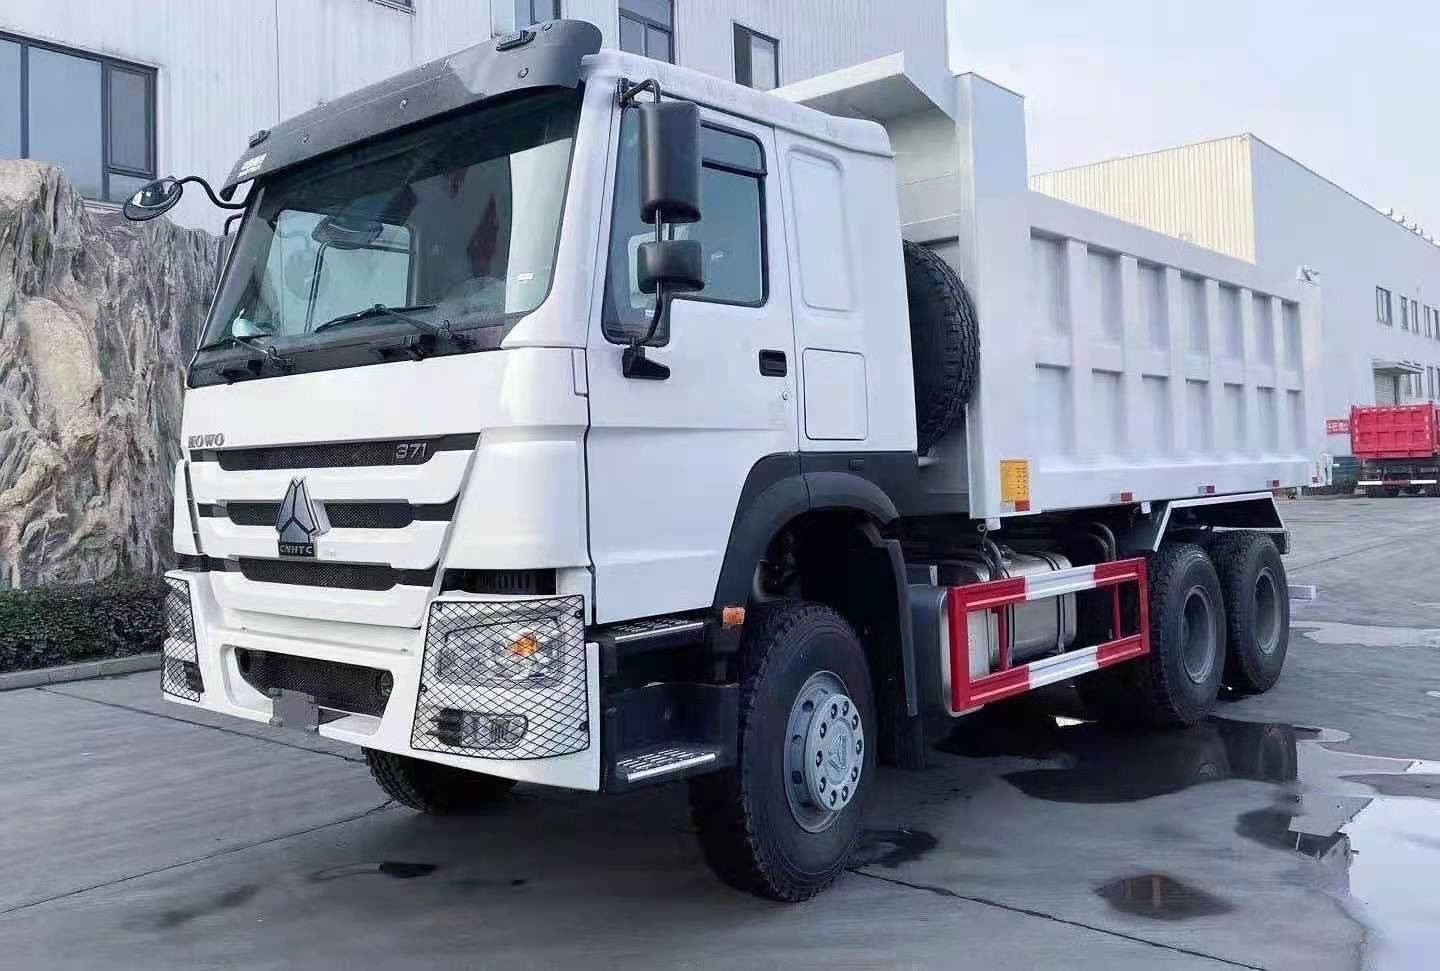 سری WD کامیون کمپرسی سنگین Sinotruk Howo 6X4